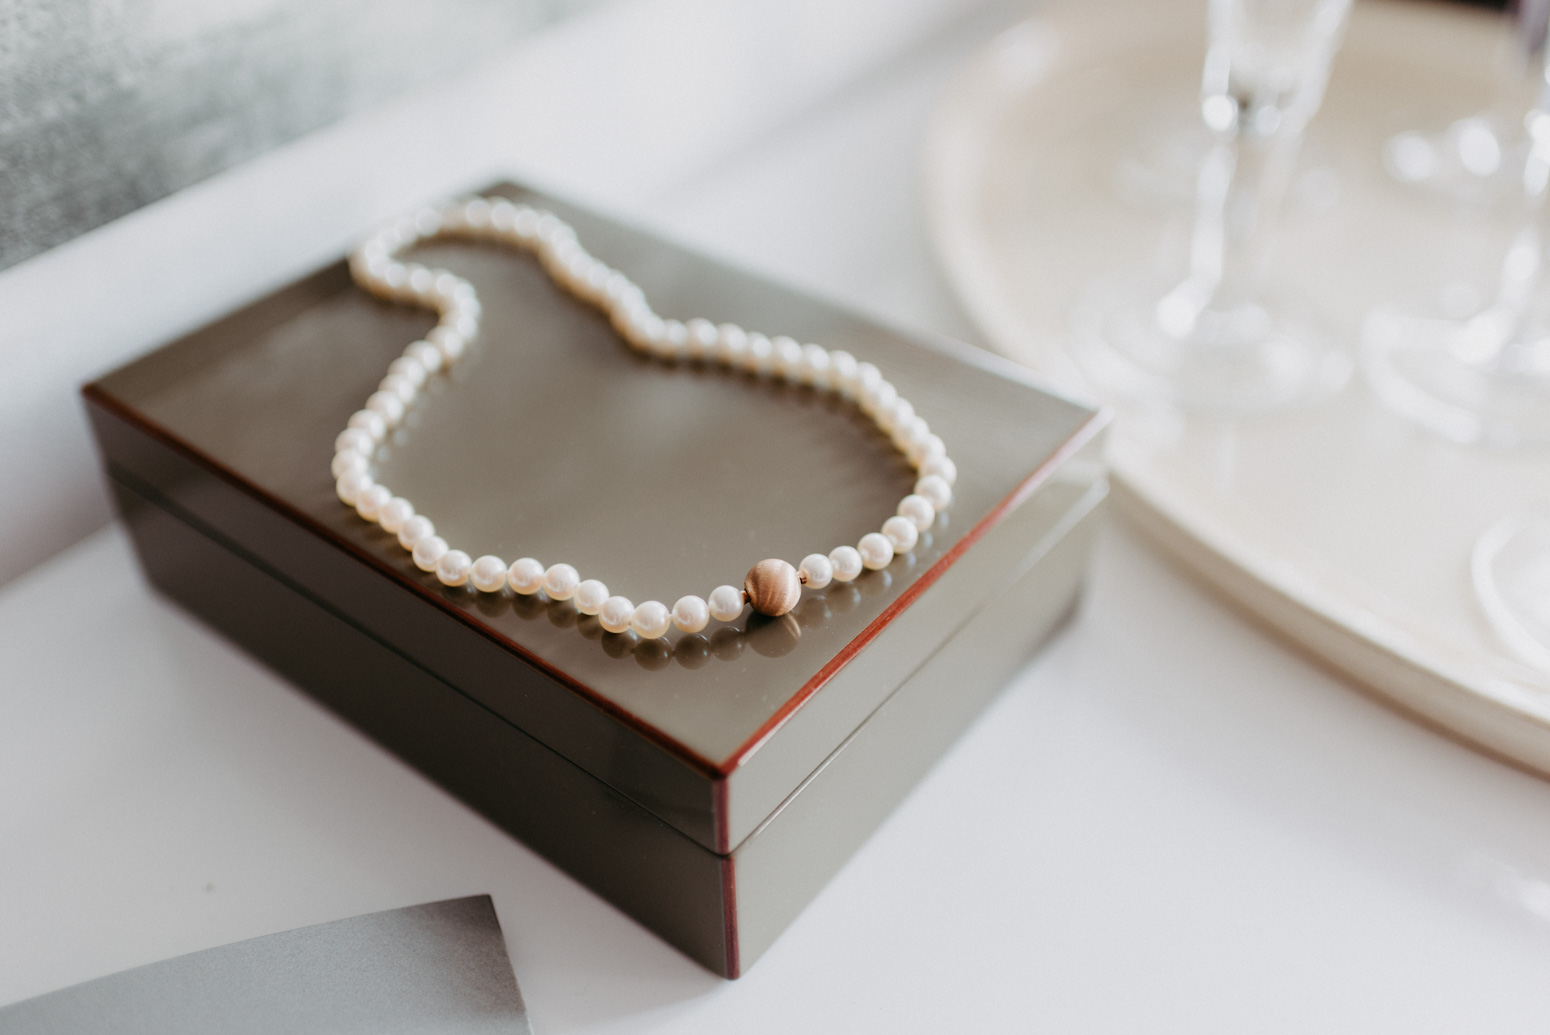 Brautschmuck, Perlenkette auf einer Schmuckschachtel